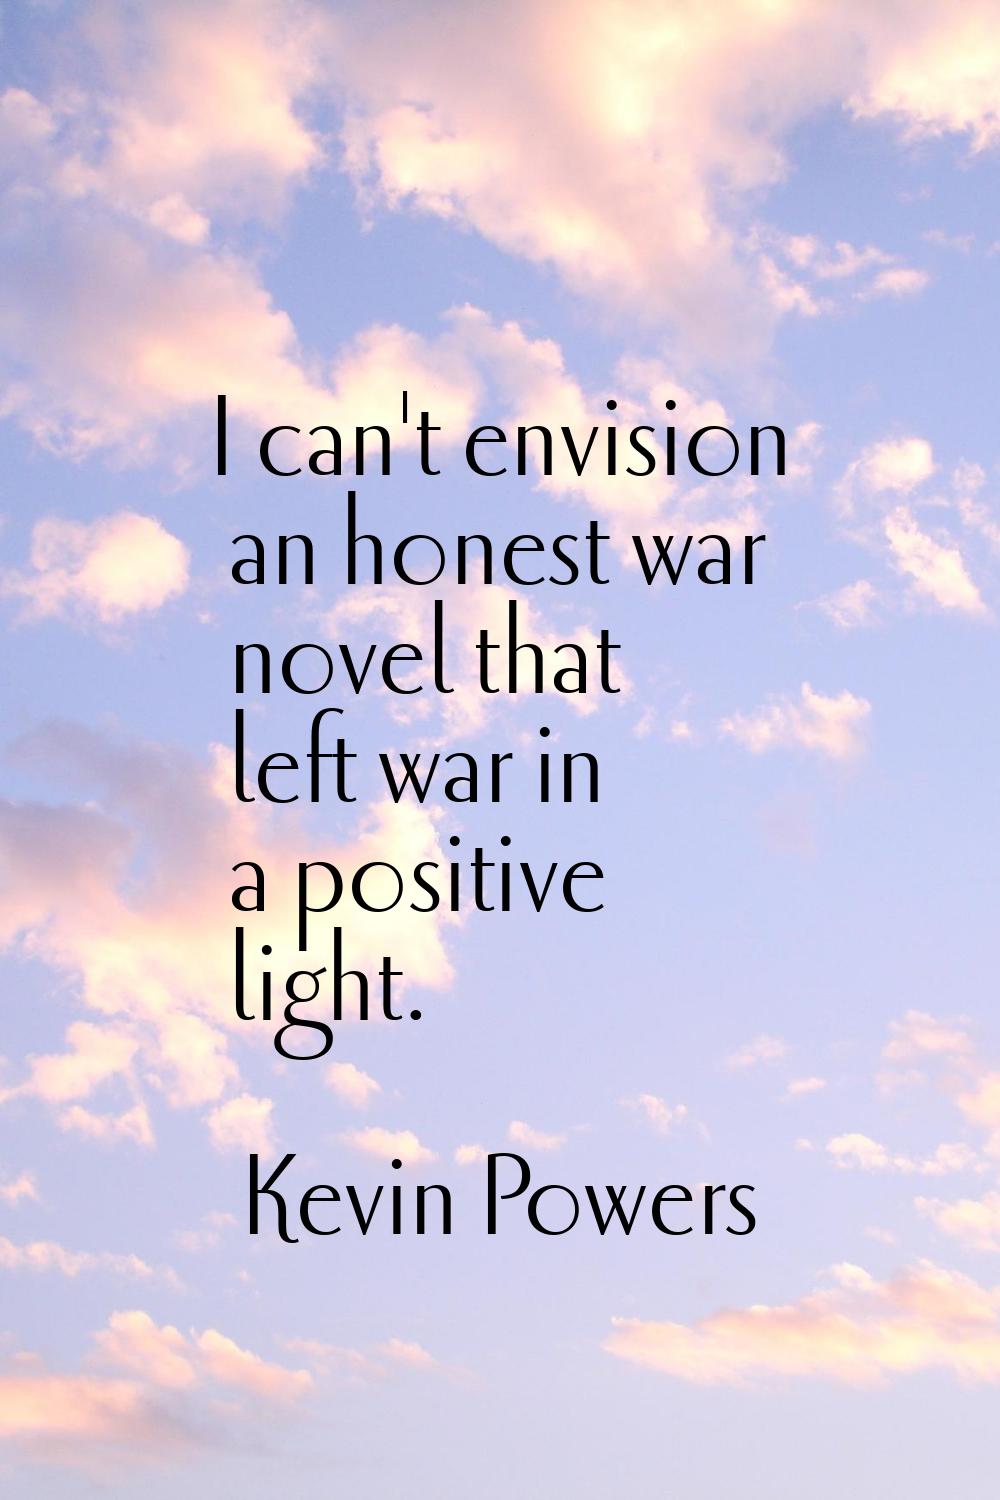 I can't envision an honest war novel that left war in a positive light.